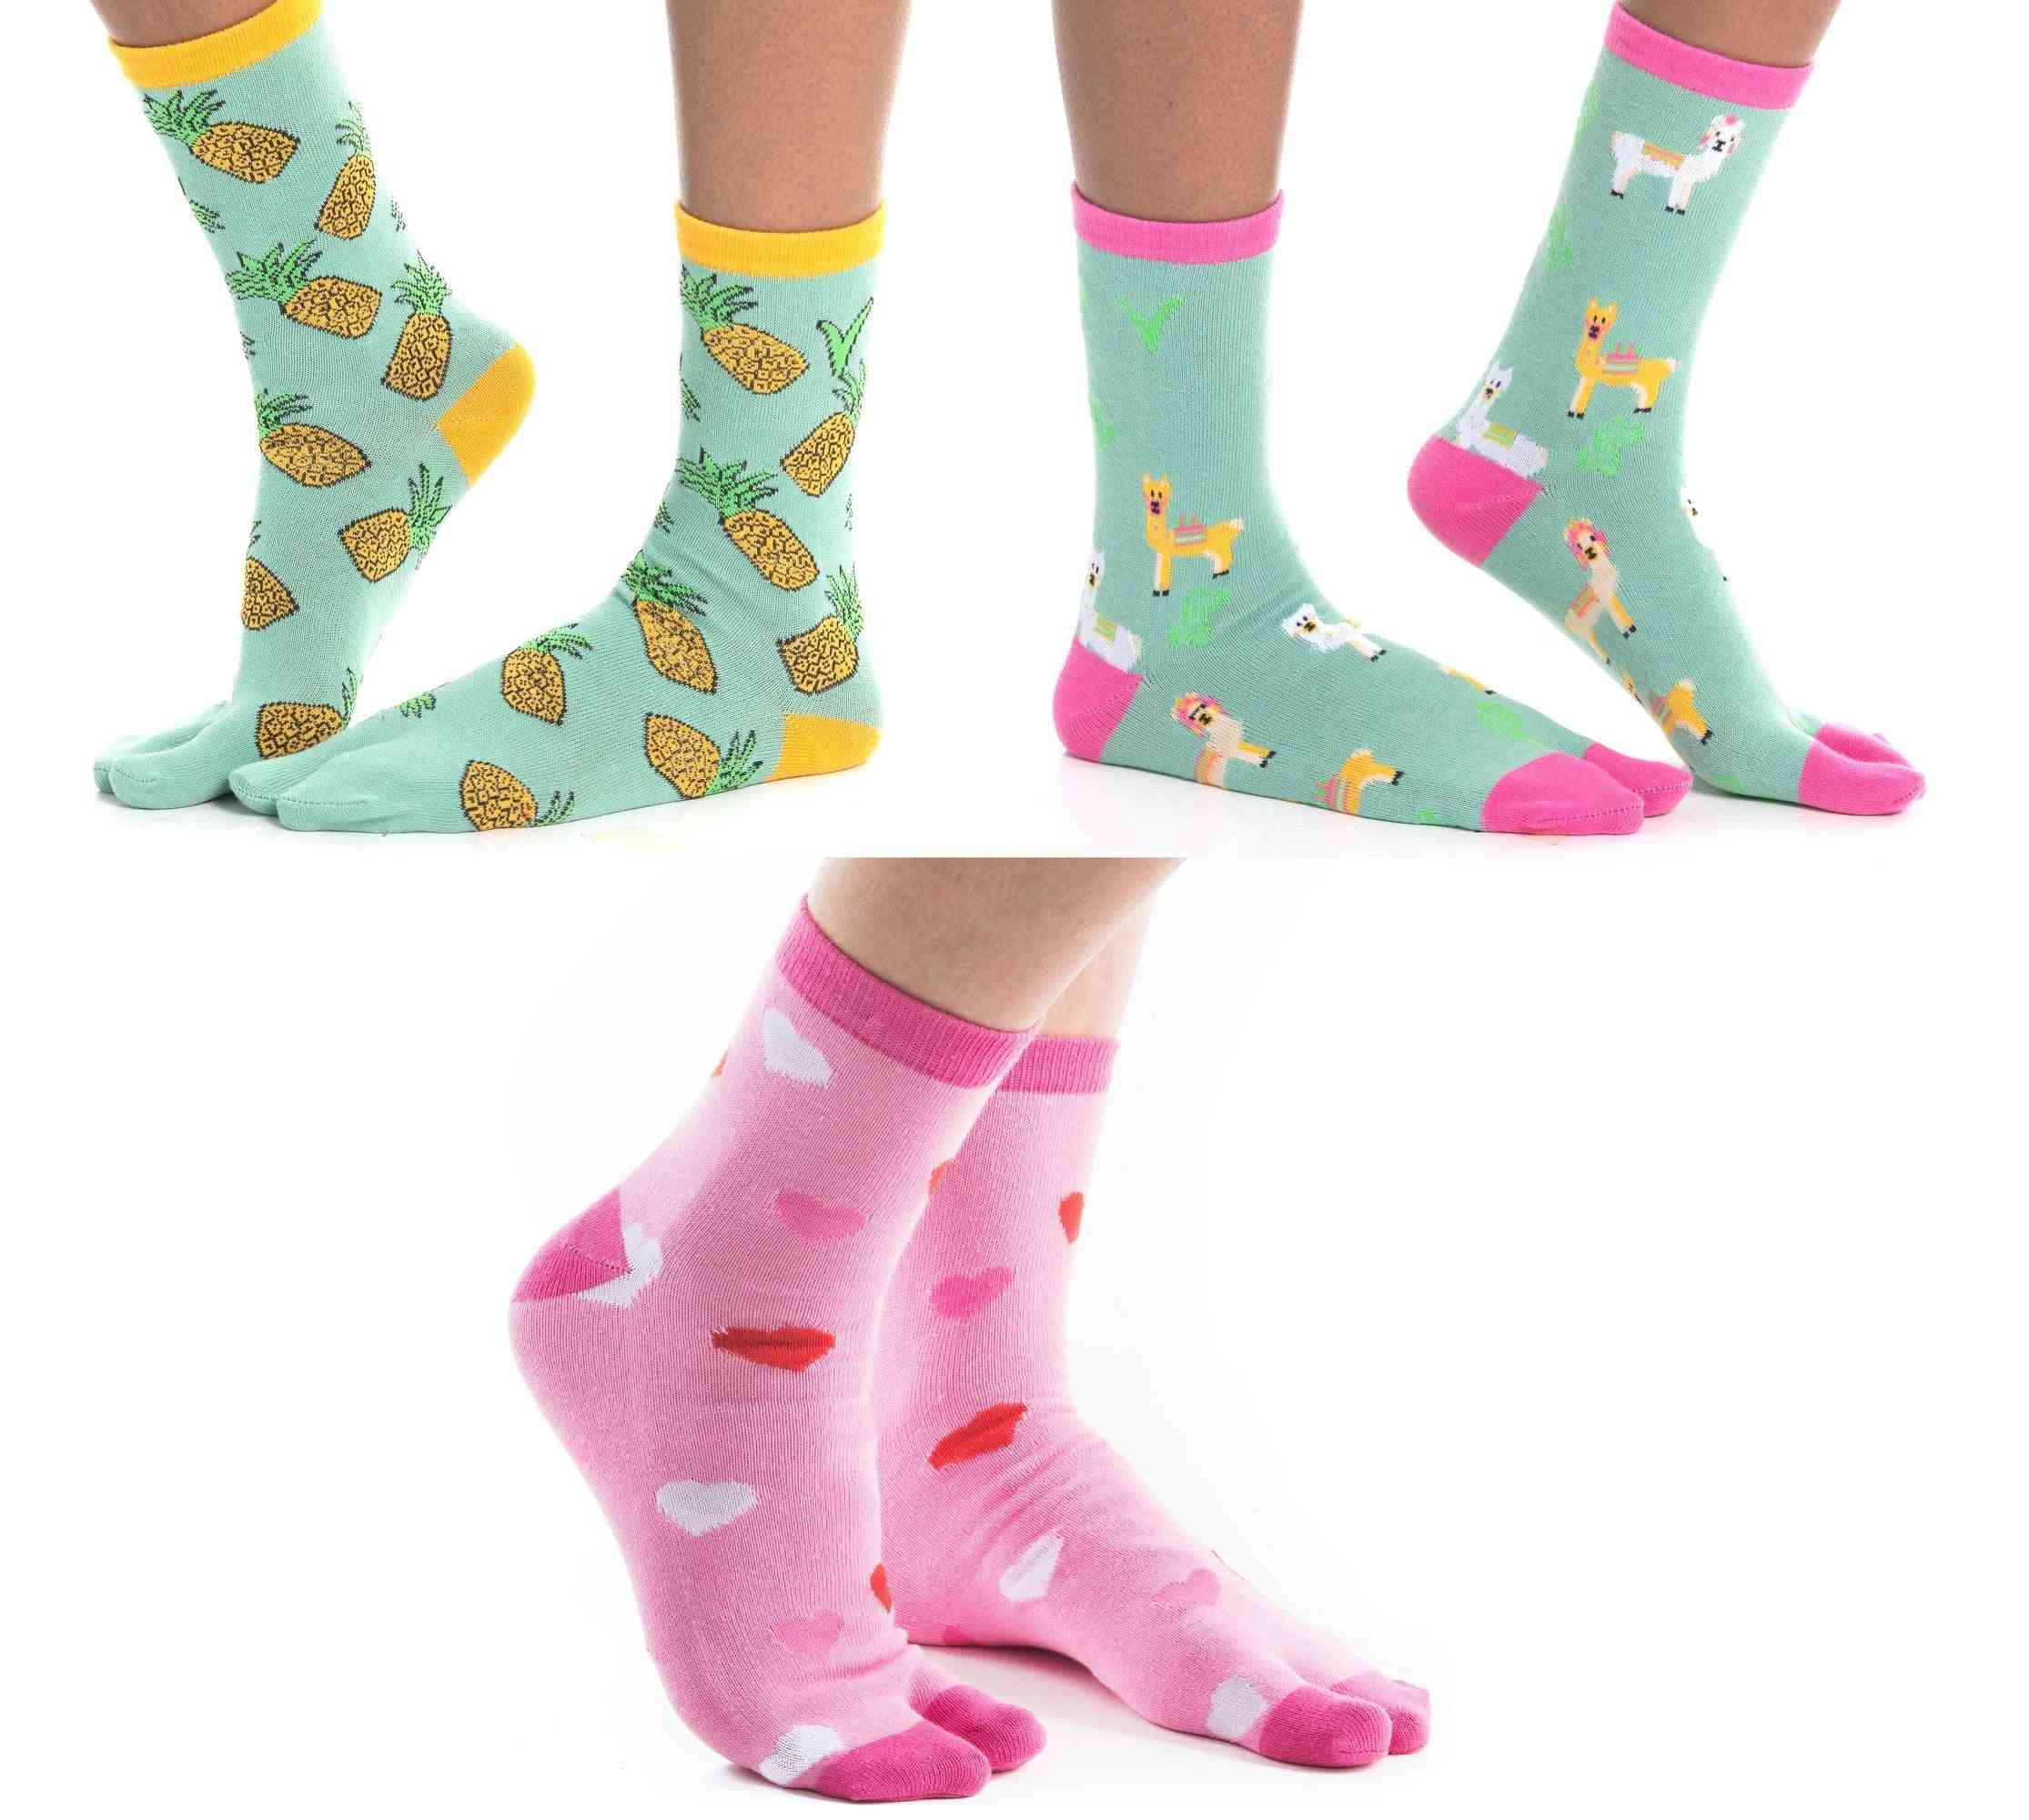 Flip-flop Printed Socks